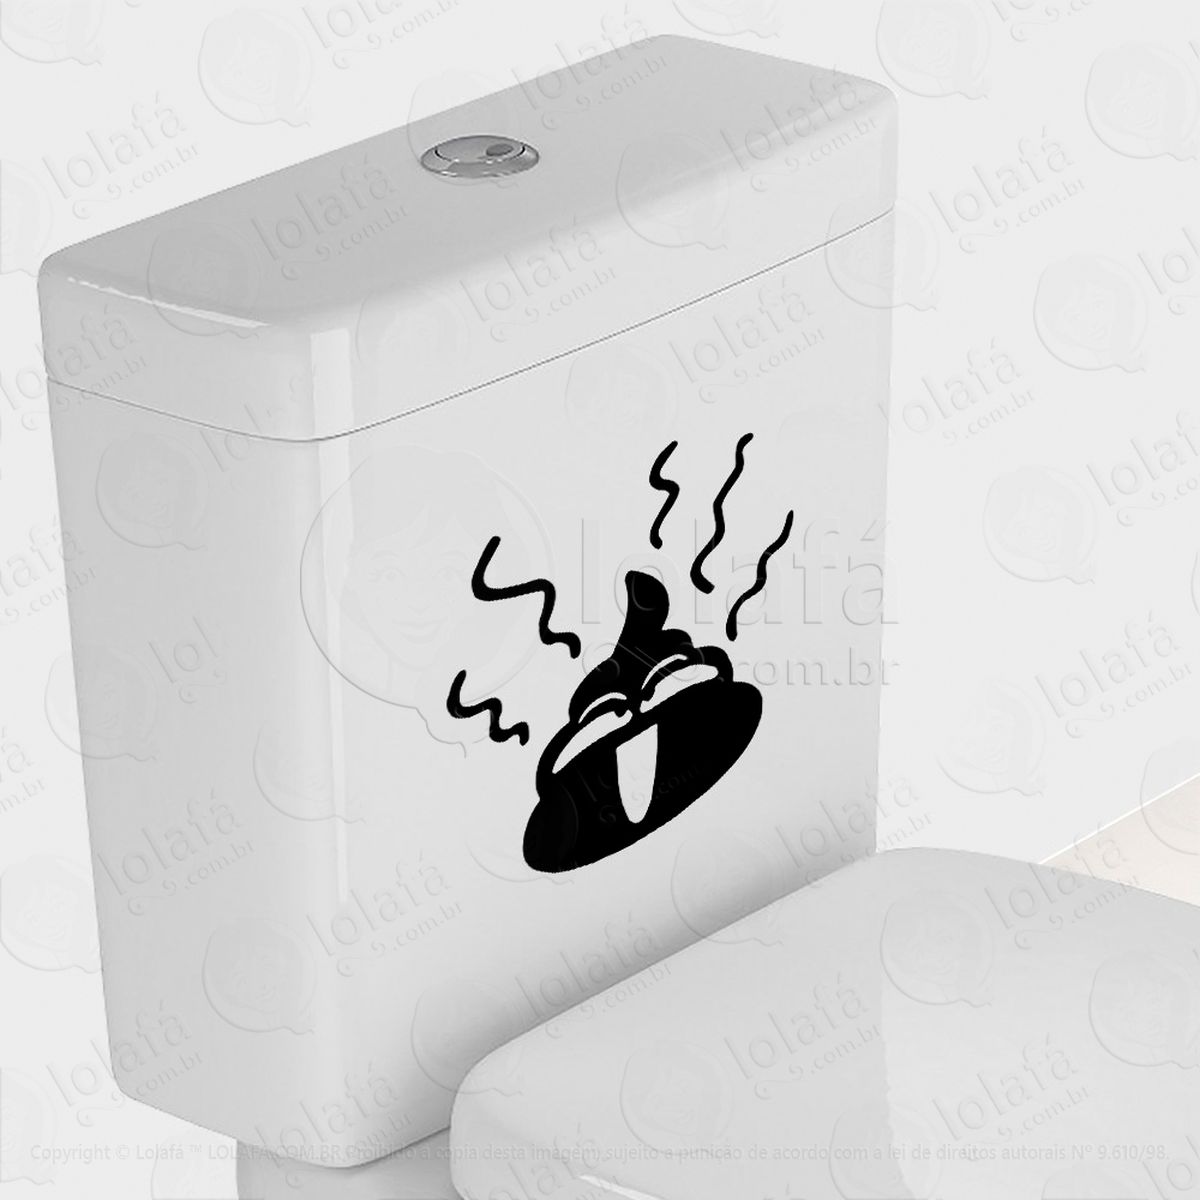 caquinha adesivo para vaso sanitário e privada - mod:50